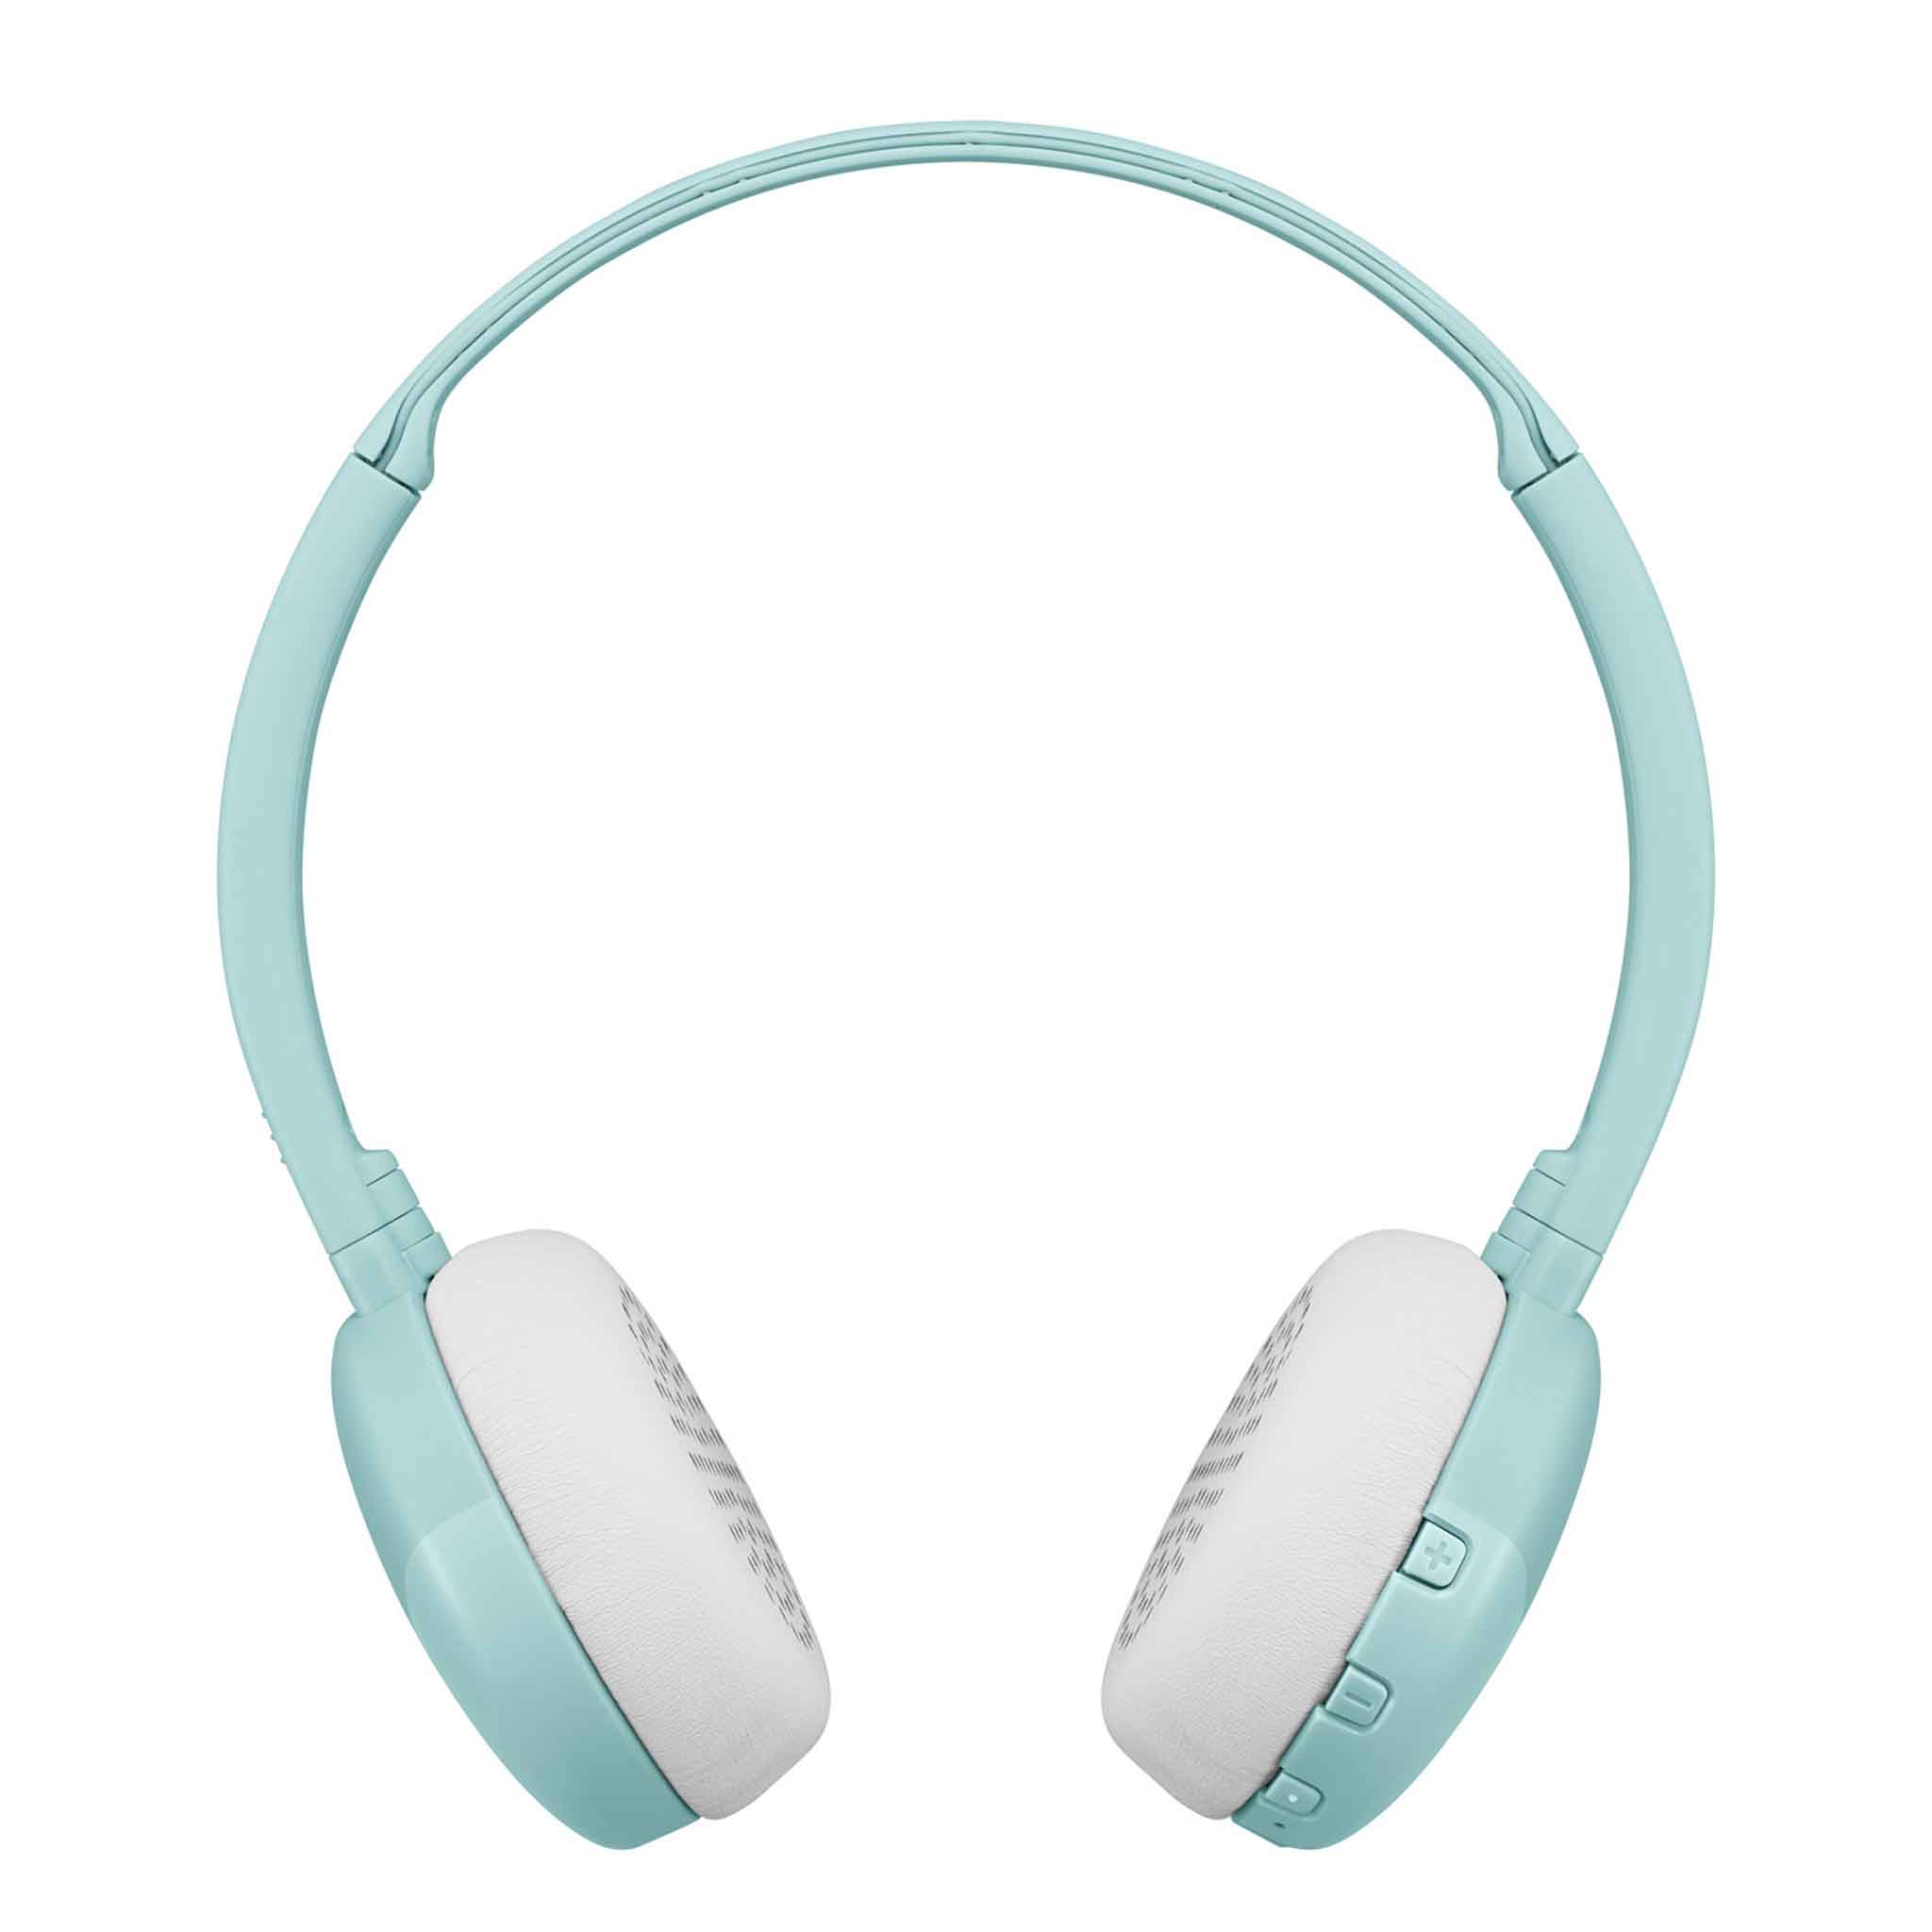 HA-S22W in Mint Green Bluetooth Wireless Headphones side view